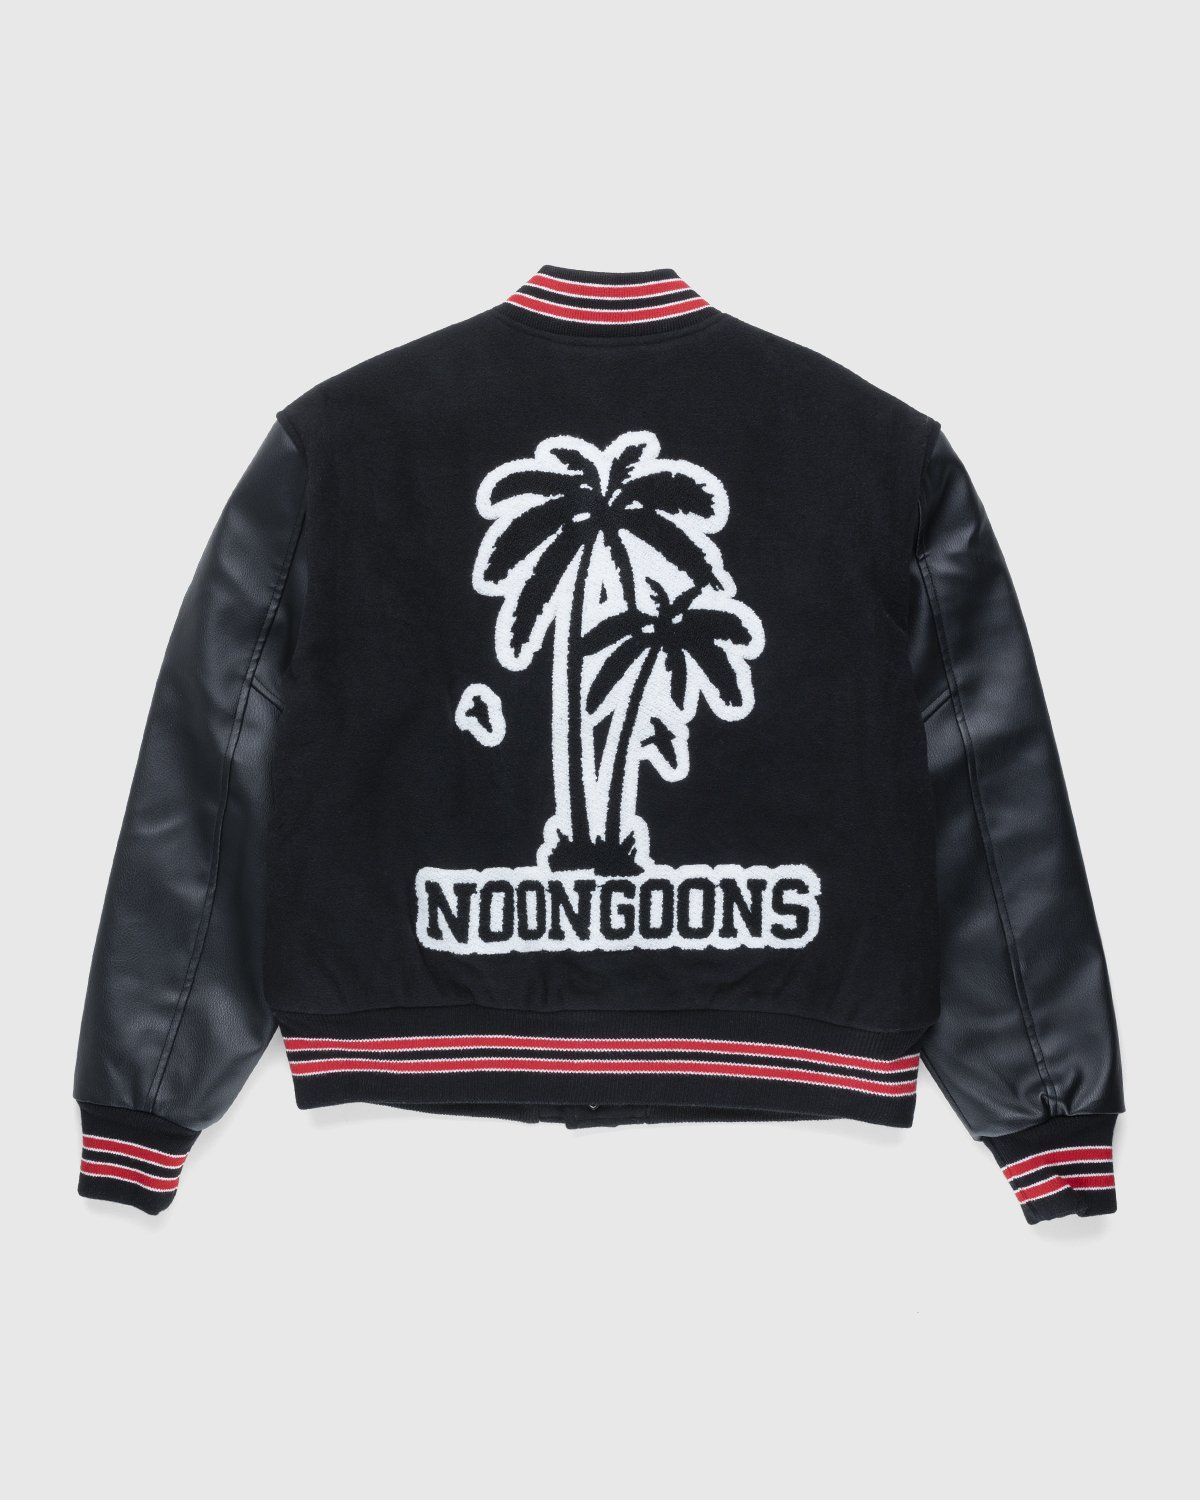 Noon Goons – Skyline Varsity Jacket Black | Highsnobiety Shop